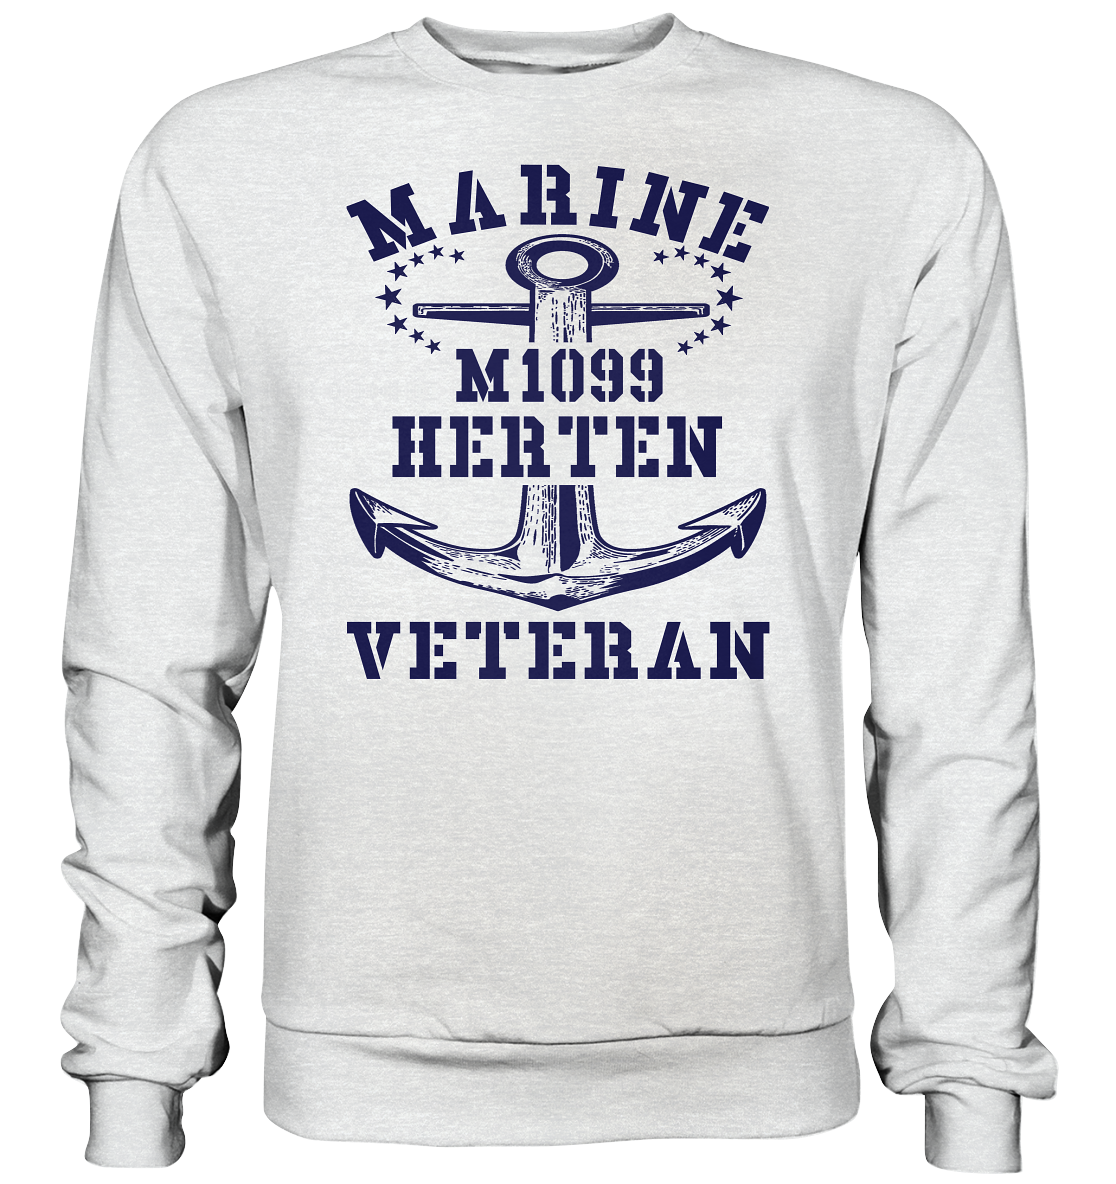 M1099 HERTEN Marine Veteran - Premium Sweatshirt